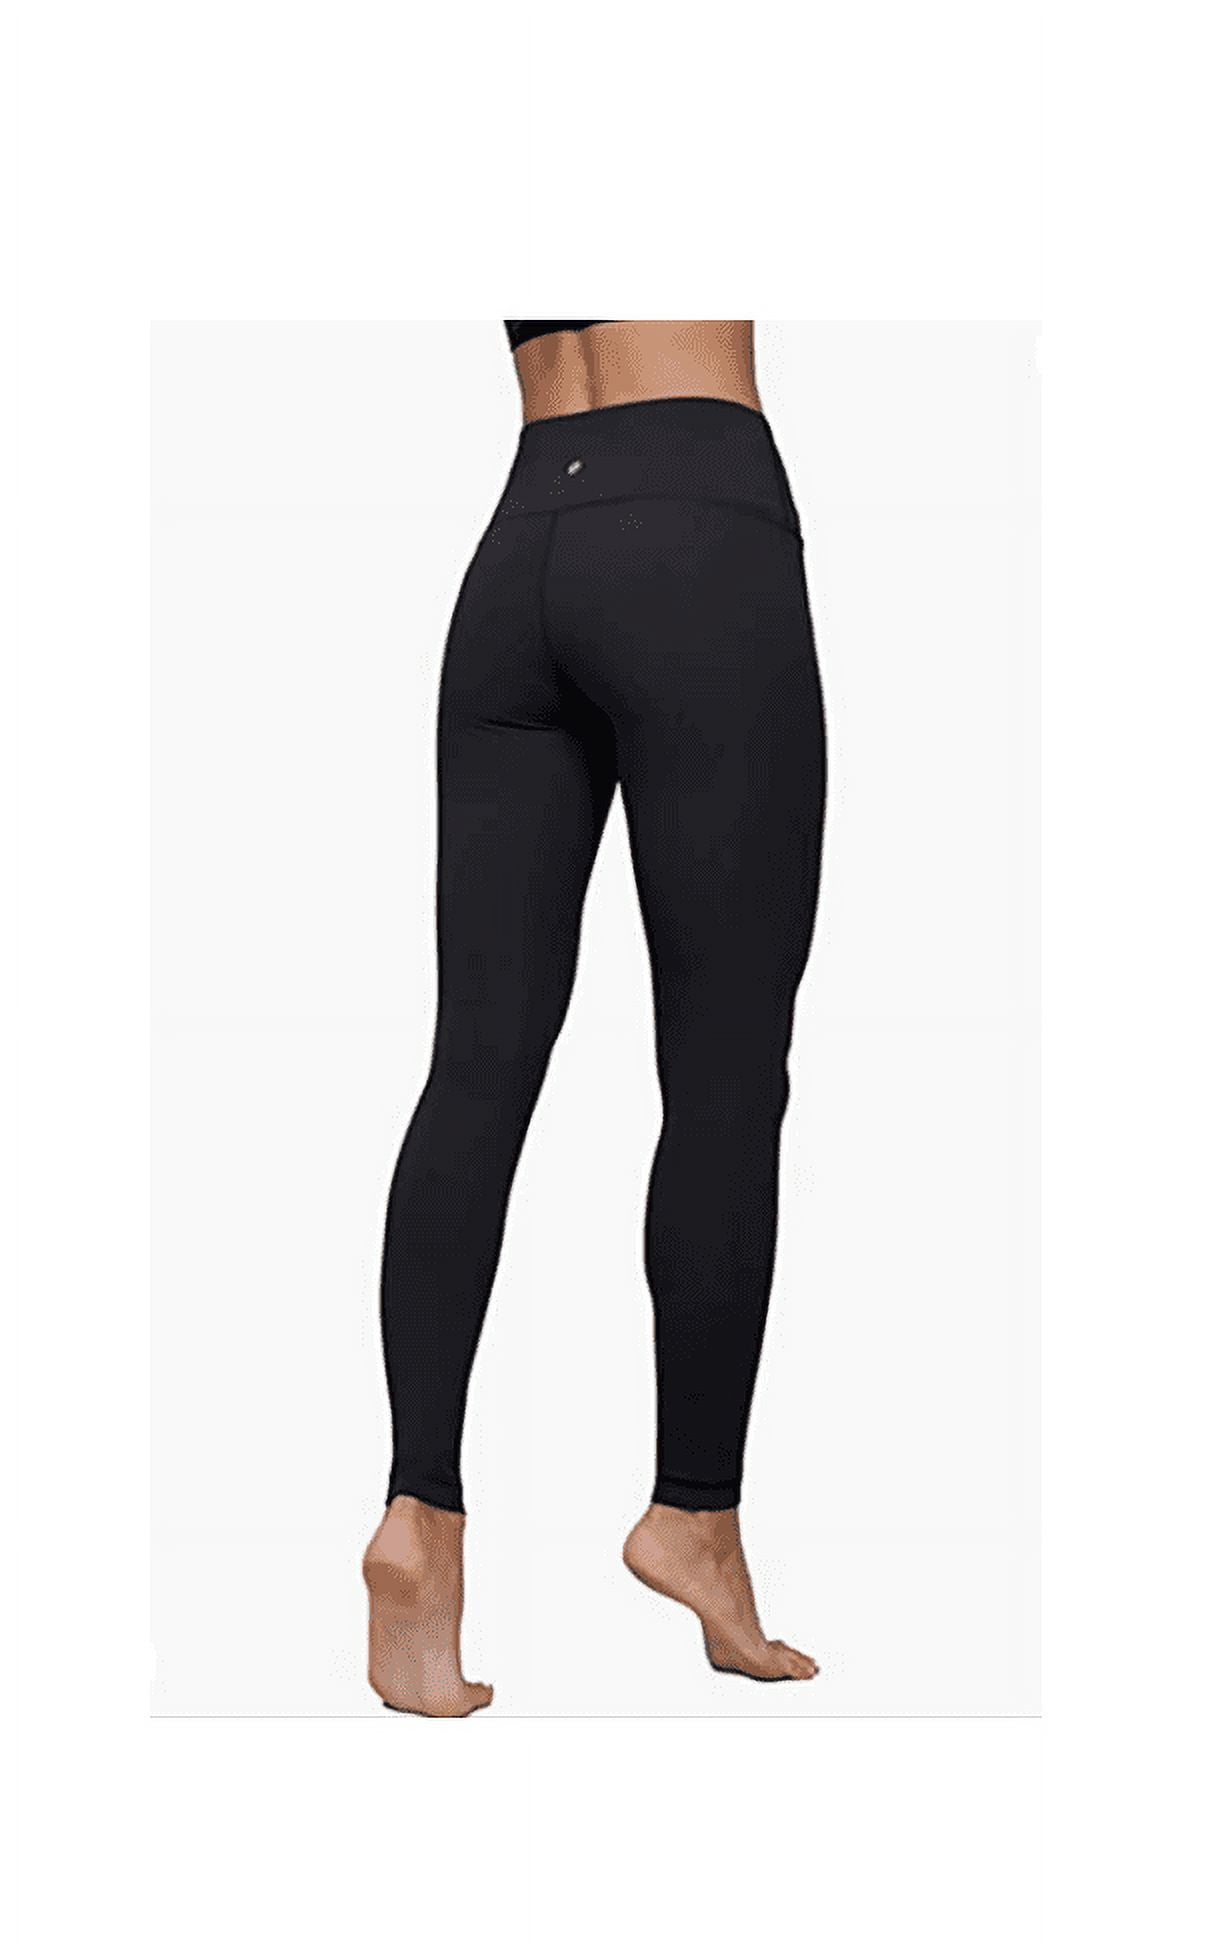 Tuff Athletics Women's Ultra Soft High Waist Yoga Pant Legging  (Neightshade, XX-Large) 